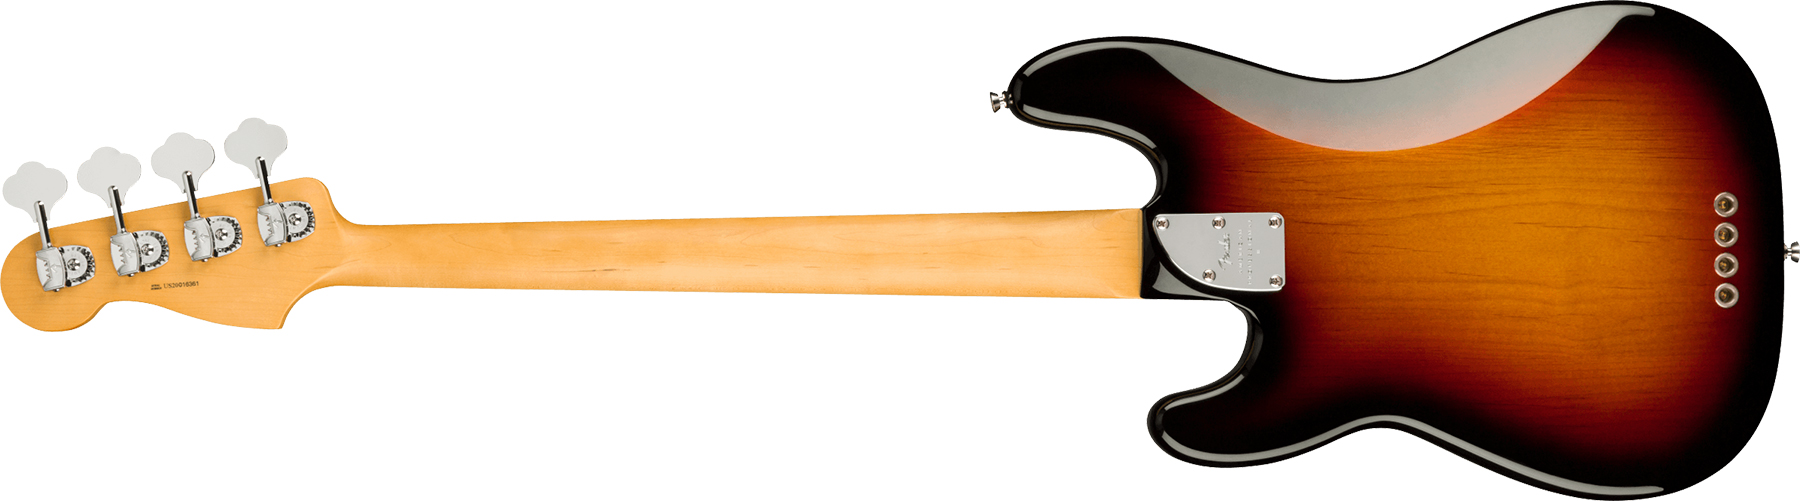 Fender Precision Bass American Professional Ii Lh Gaucher Usa Rw - 3-color Sunburst - Bajo eléctrico de cuerpo sólido - Variation 1